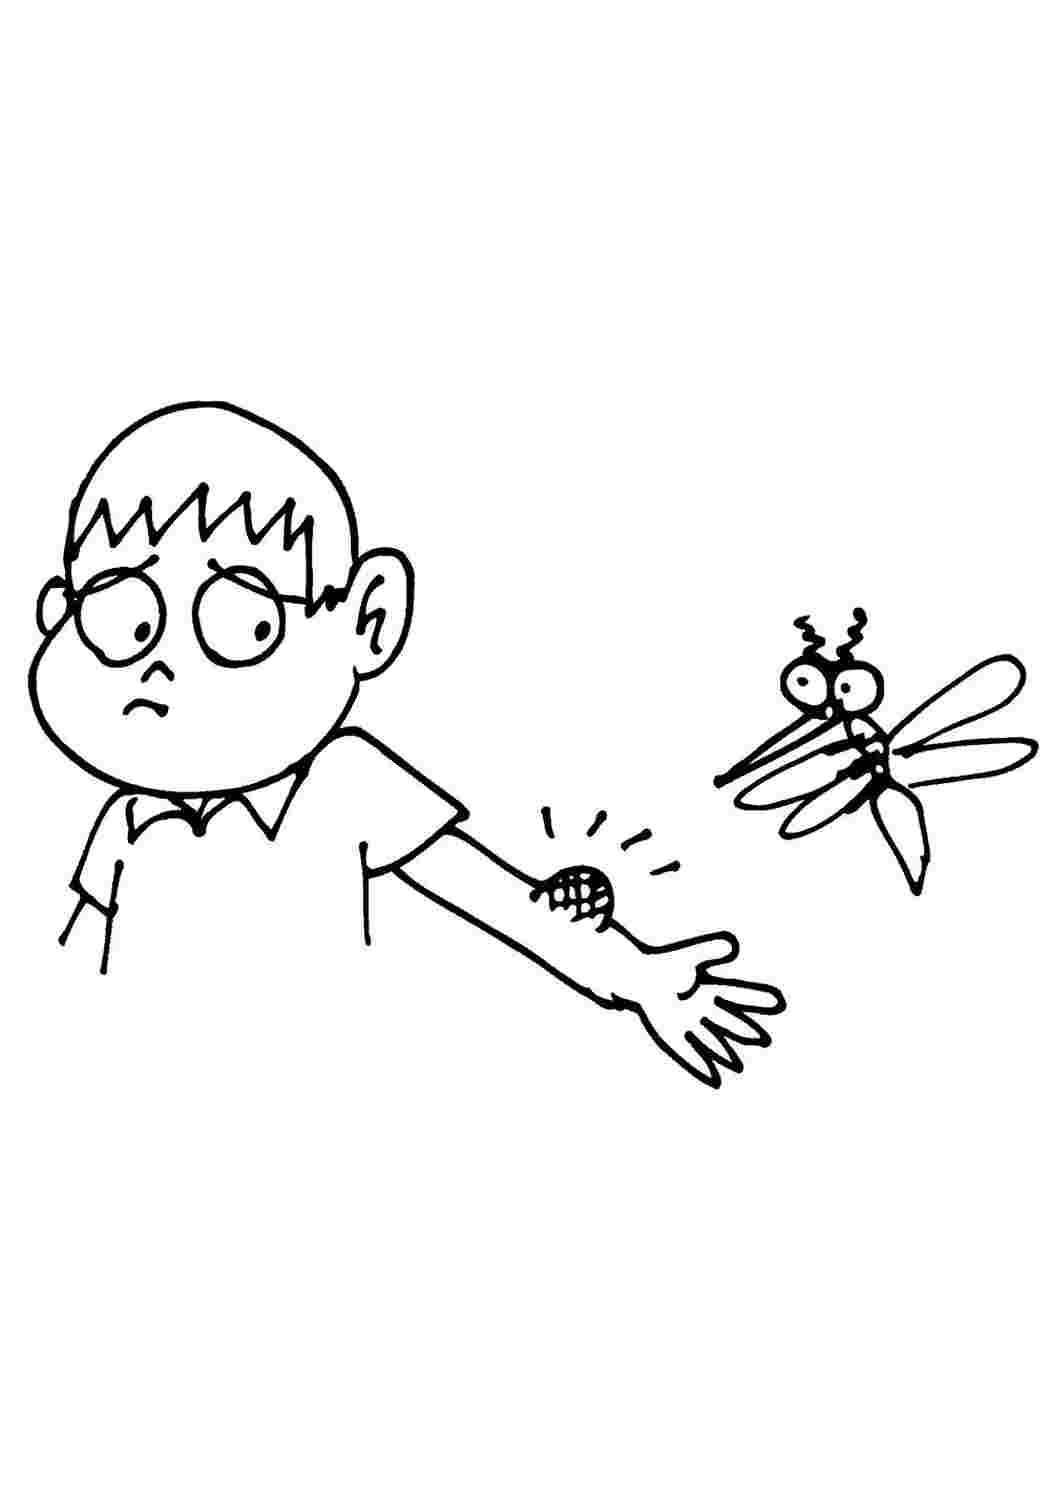 Страница раскраски комара для детей » Gratis Ausdrucken & Ausmalen » Artus Art